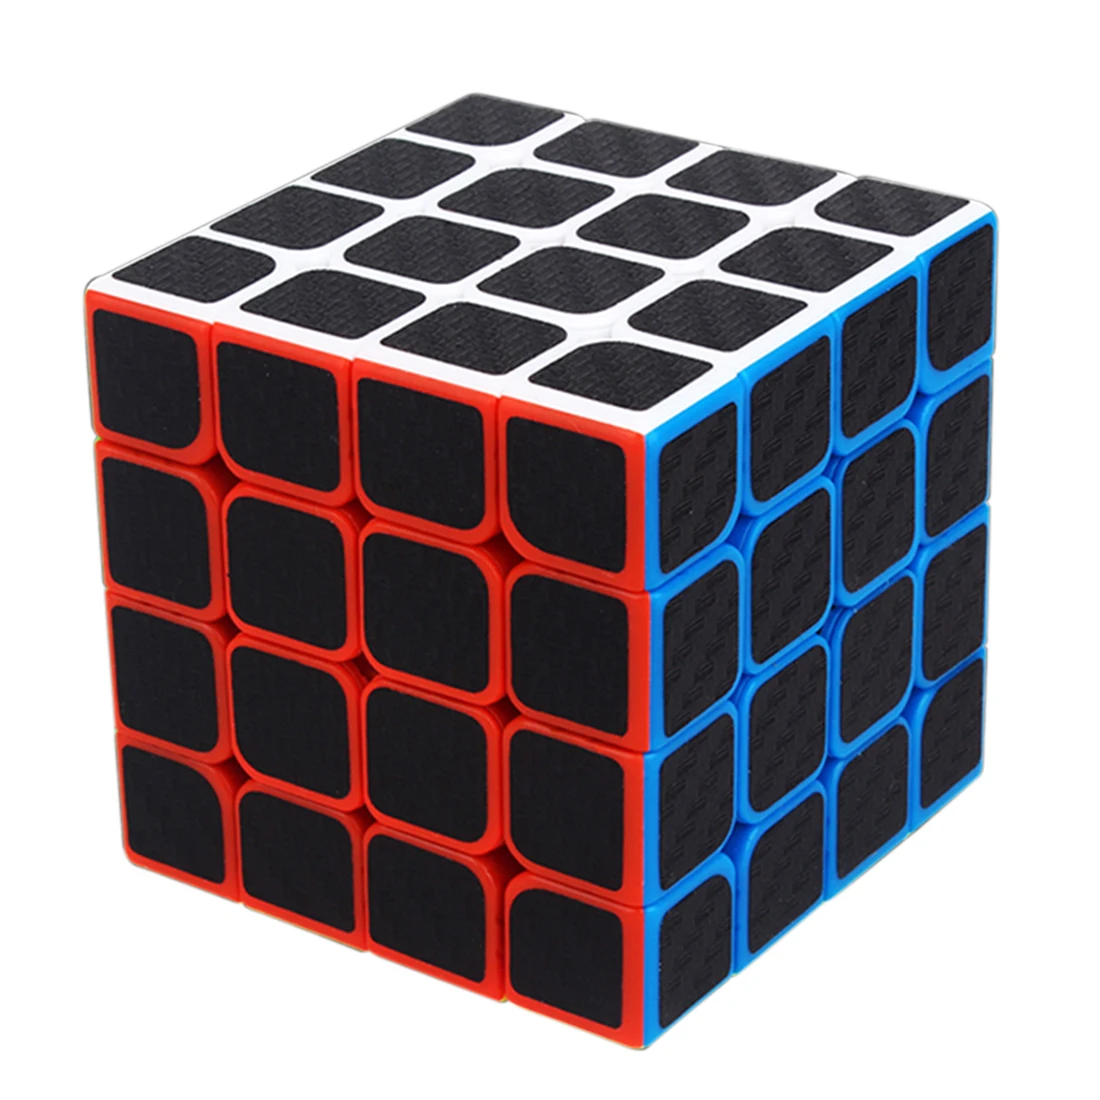 1639 углеродное волокно Skewcube/4x4x4/5x5x5 магический куб 4х4 магические кубики головоломка скоростной куб